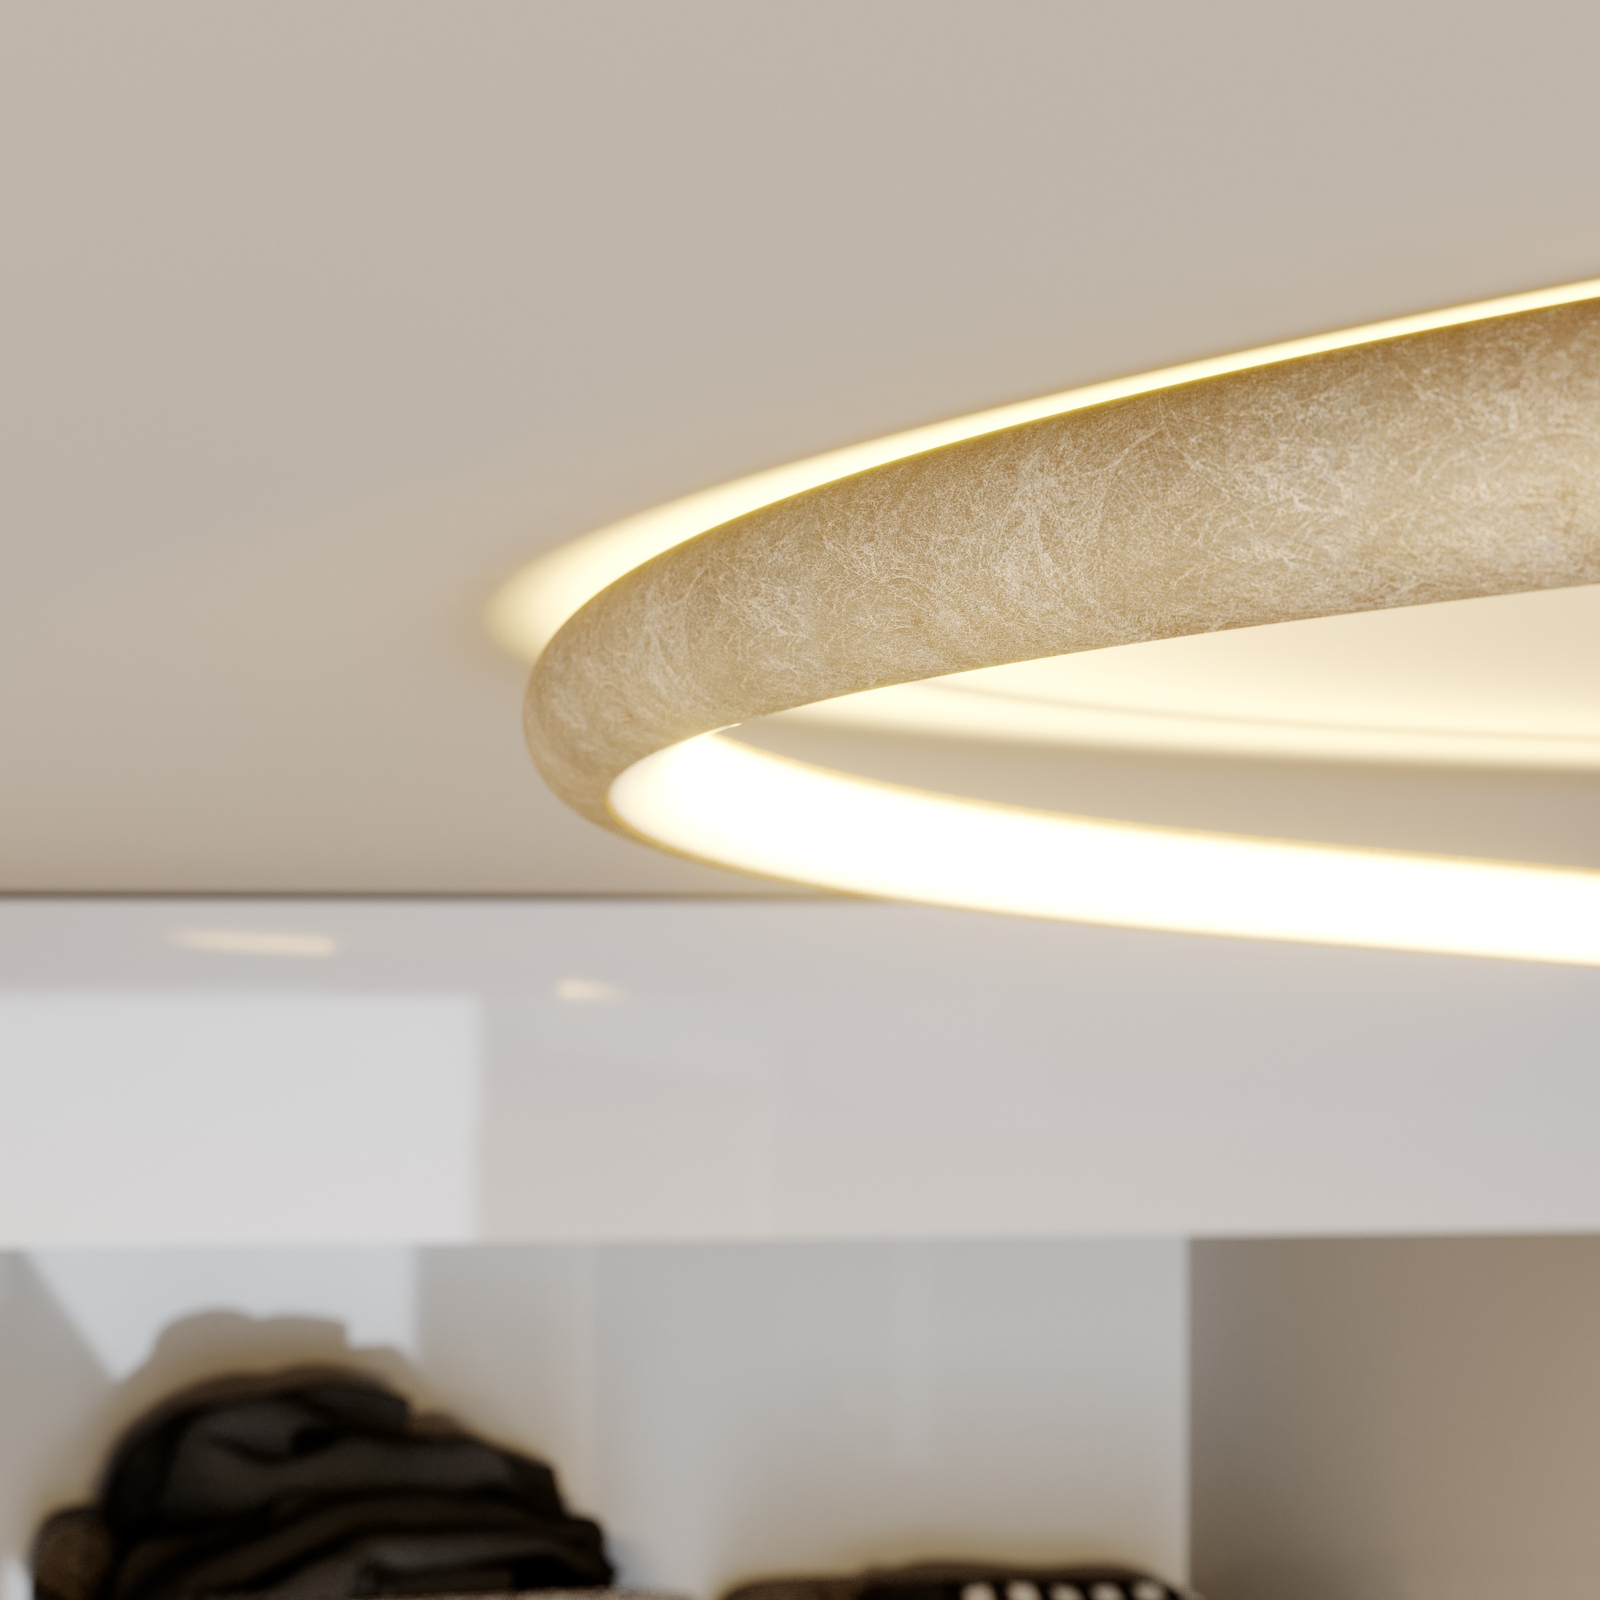 Lampa sufitowa LED Joline w kolorze złotym, 45 cm, metalowa